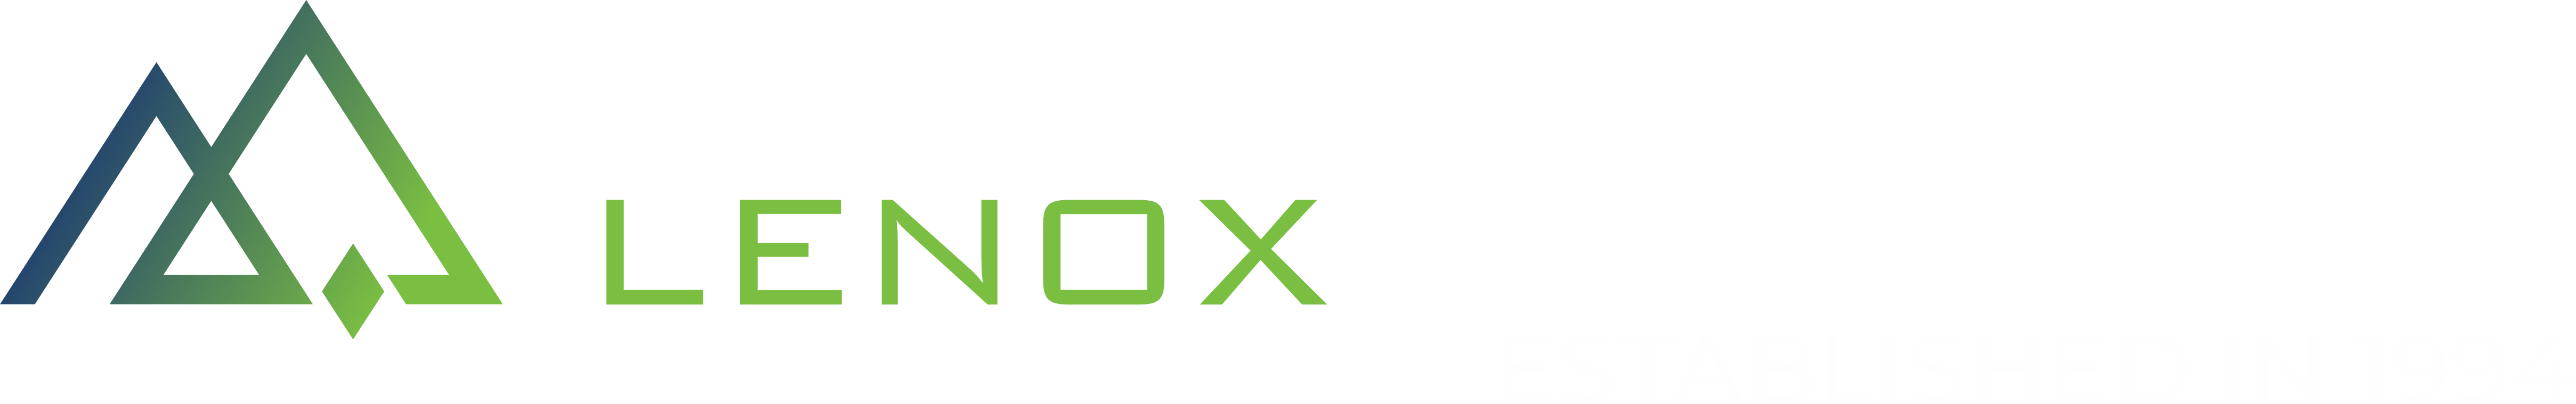 XXXL LF 1994 logo